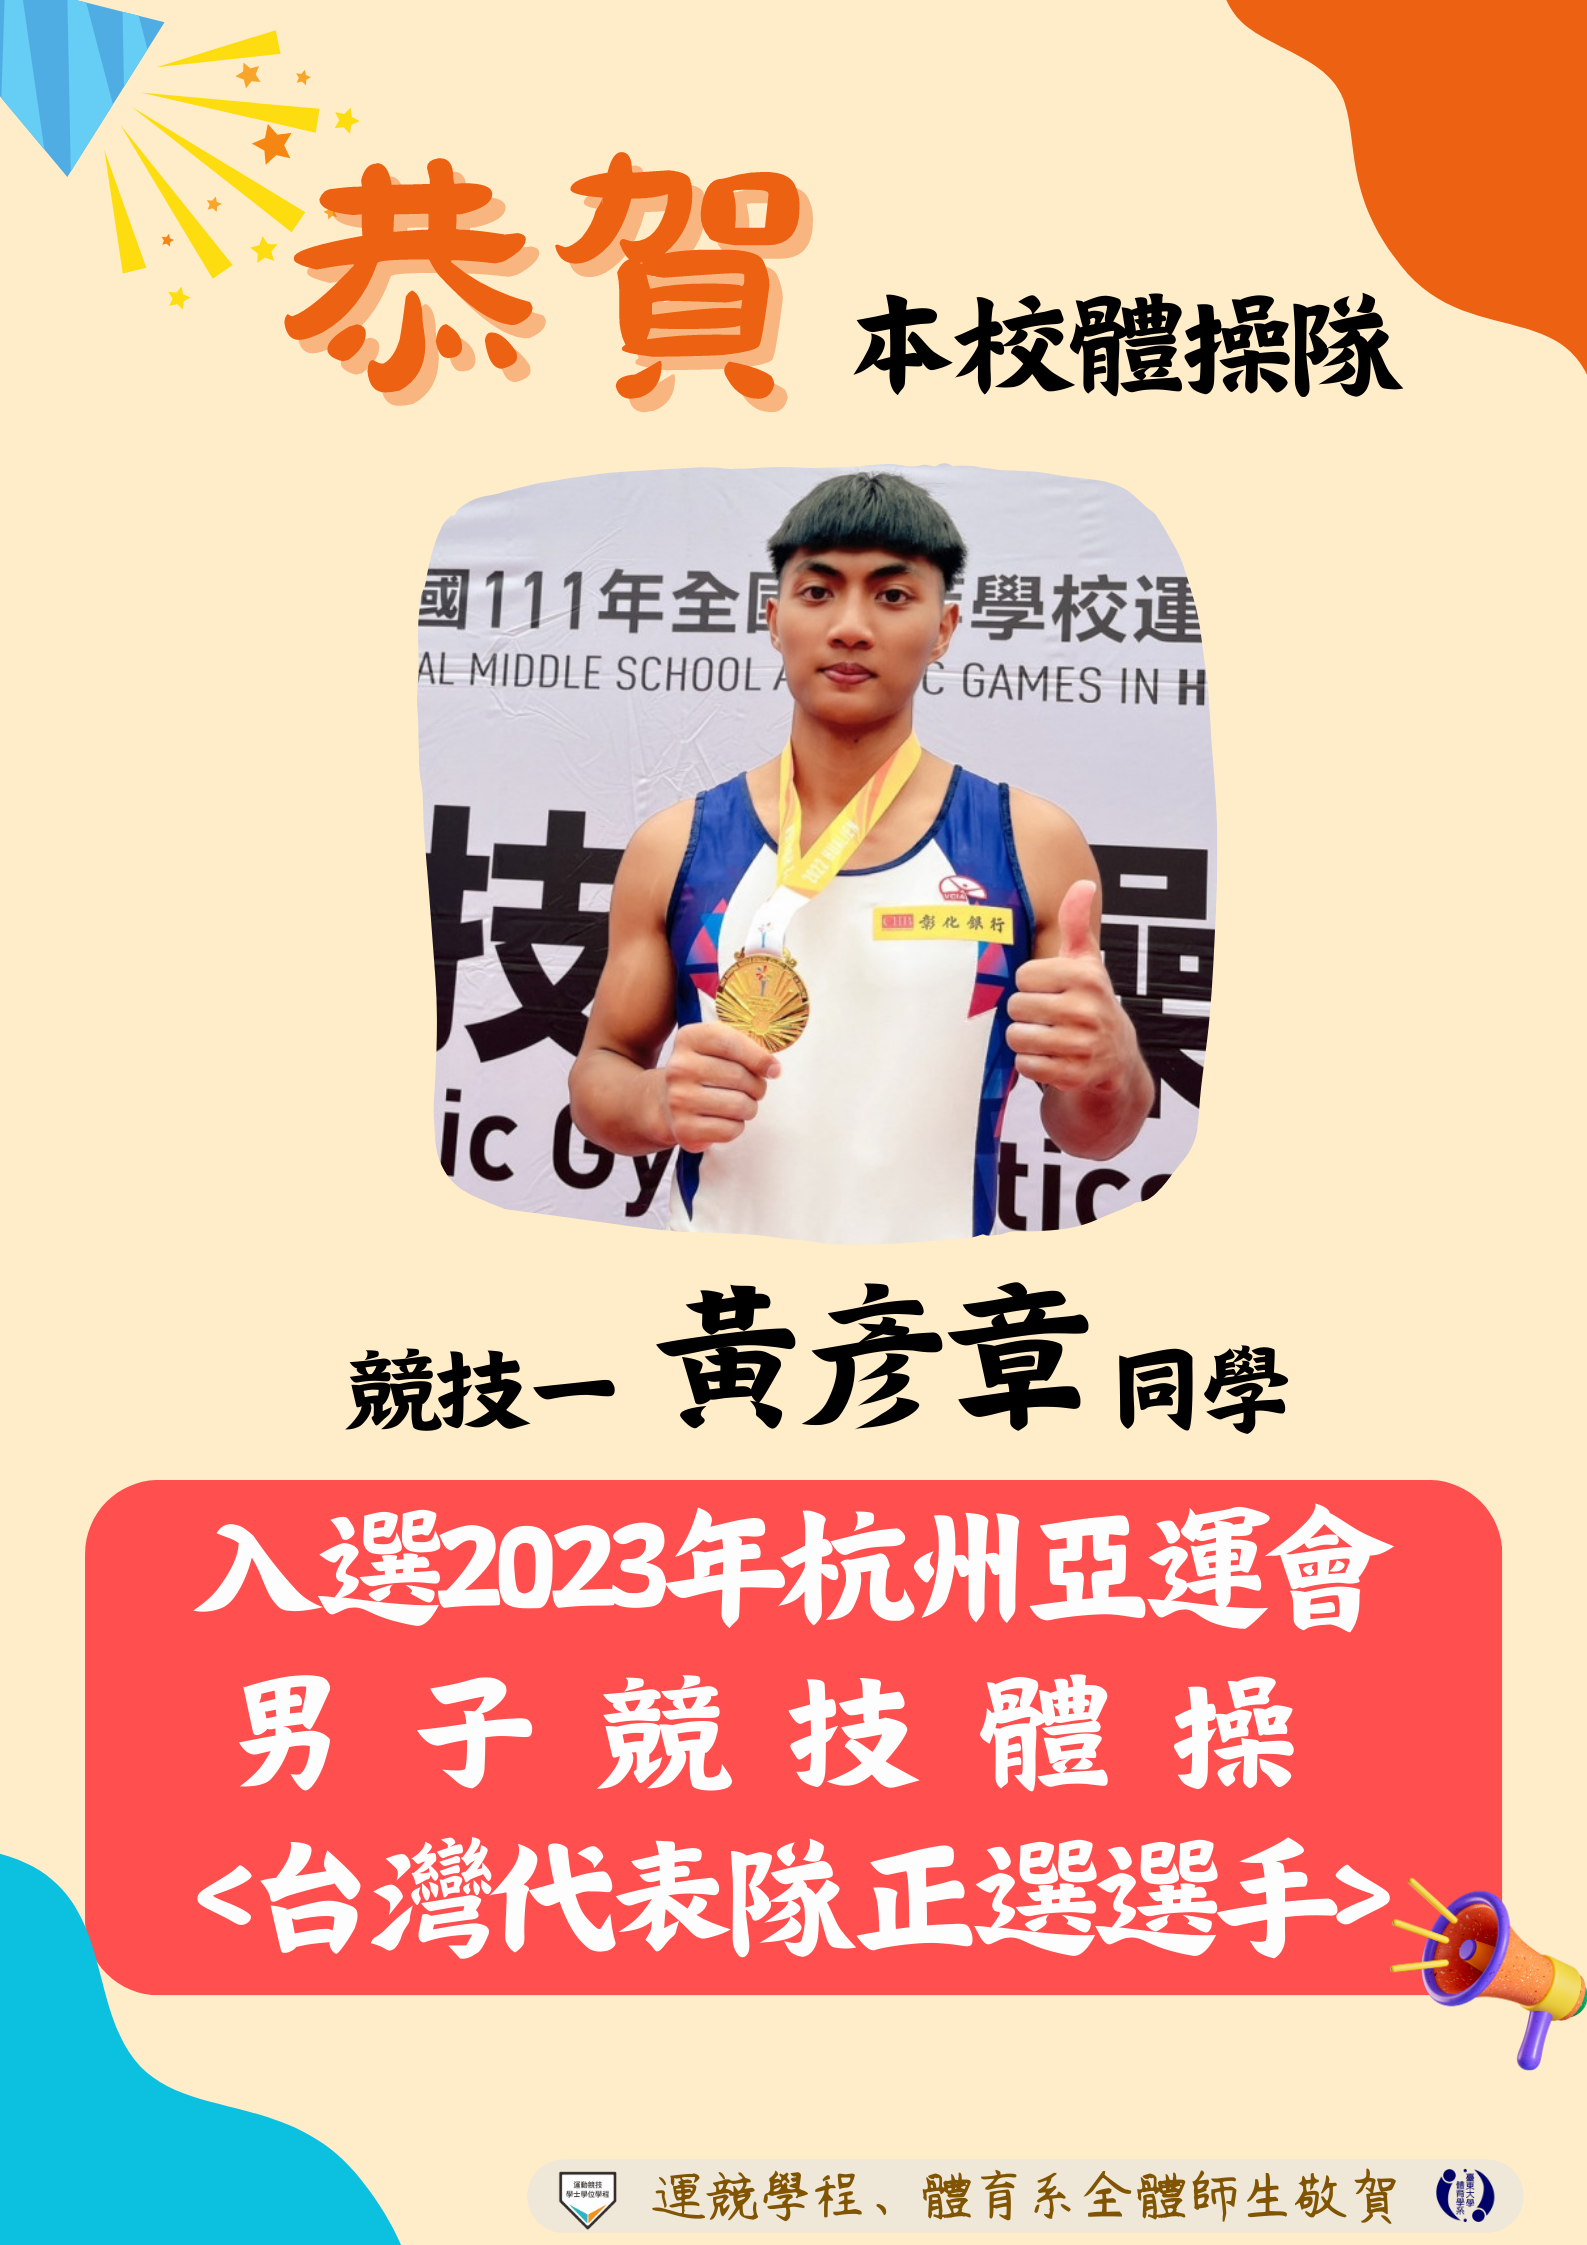 本校體操隊競技一黃彥章同學，獲選2023杭州亞運競技體操隊代表！！！取得國手資格